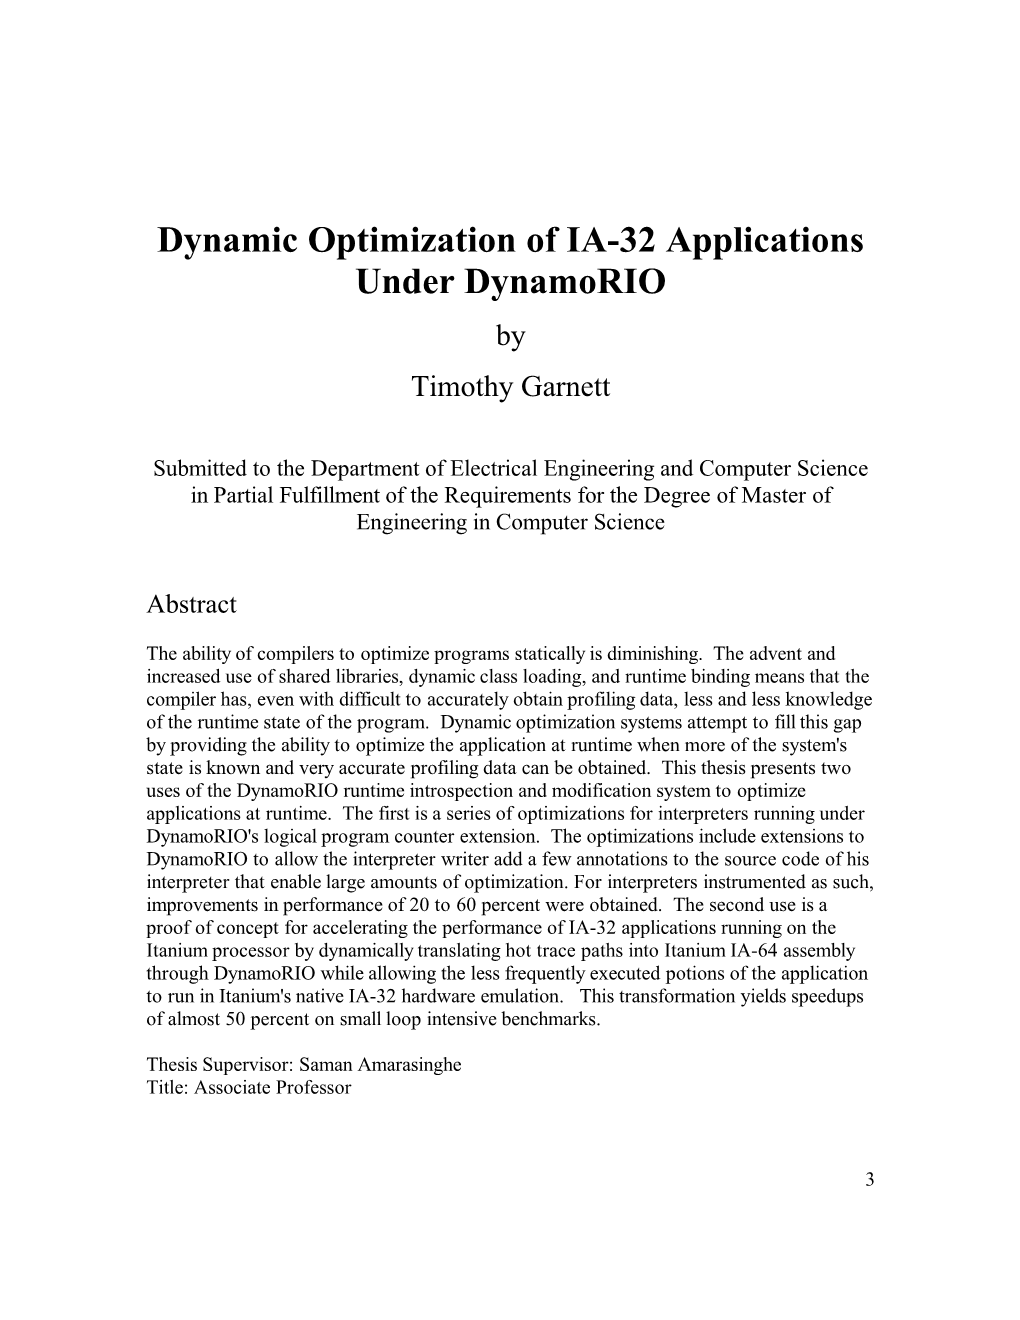 Dynamic Optimization of IA-32 Applications Under Dynamorio by Timothy Garnett